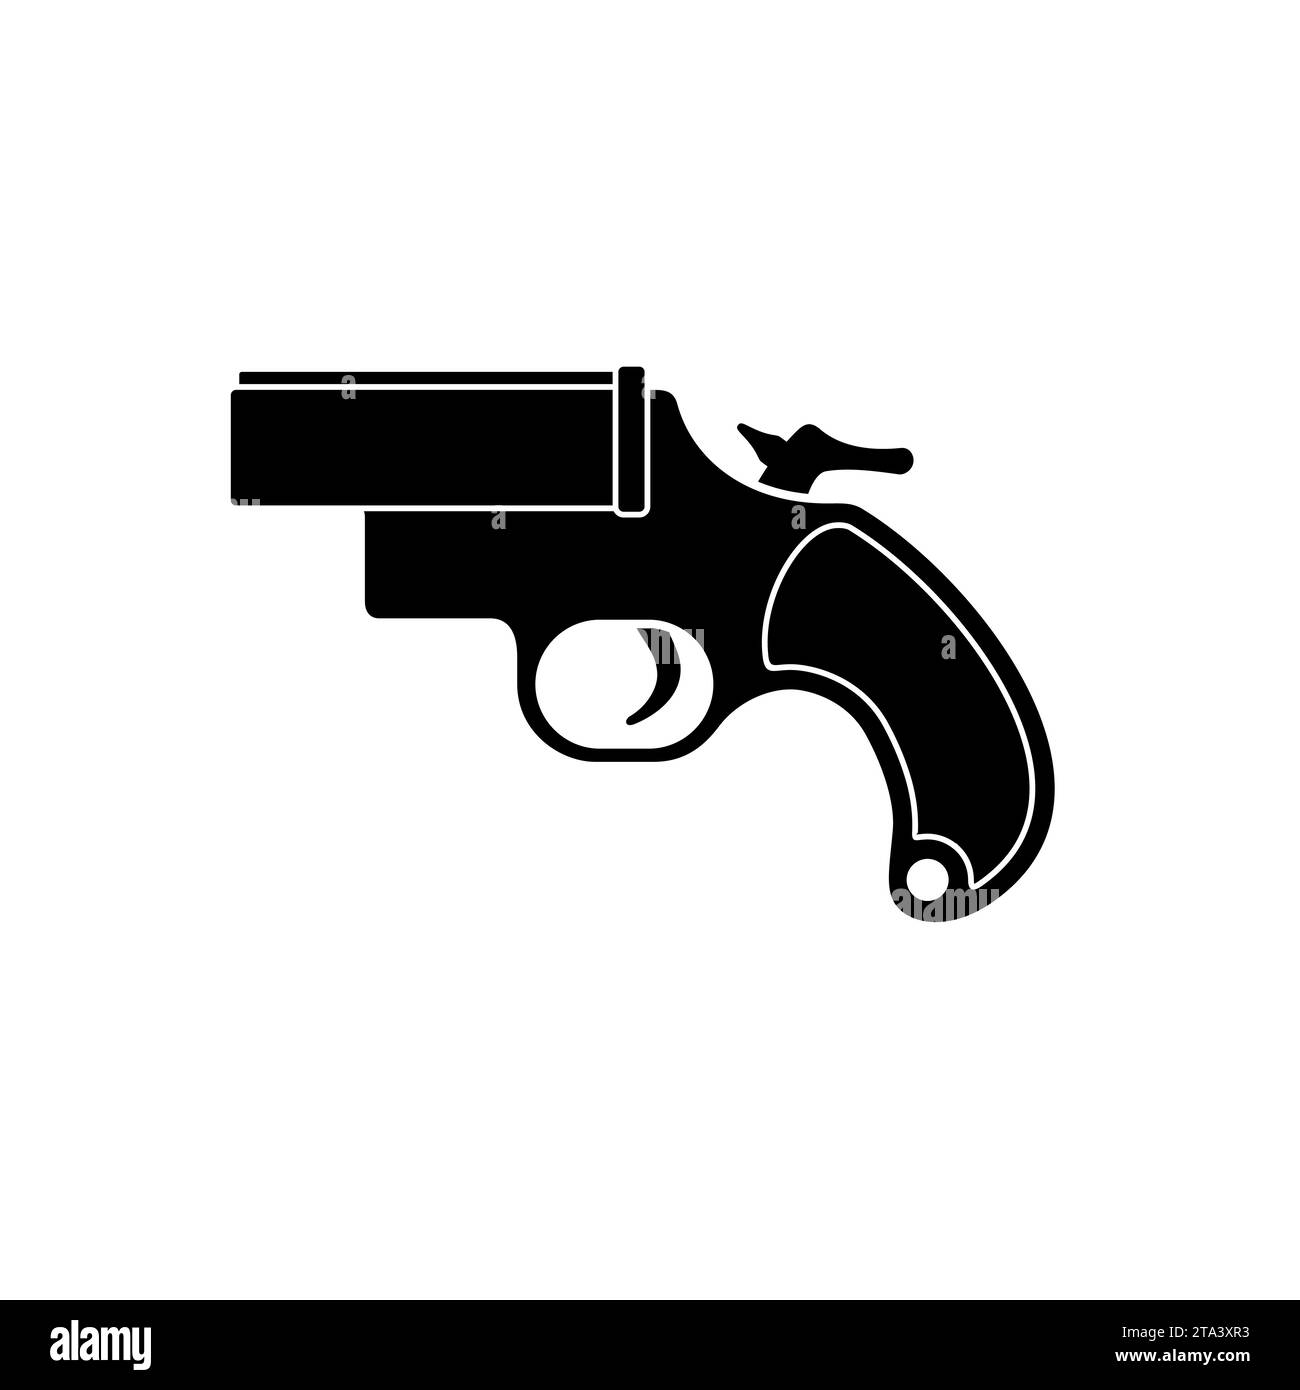 Un icono de pistola de llamarada, también conocido como una pistola muy o pistola de señal, es una pistola de gran calibre que descarga bengalas. La pistola de llamaradas se utiliza para una angustia Ilustración del Vector